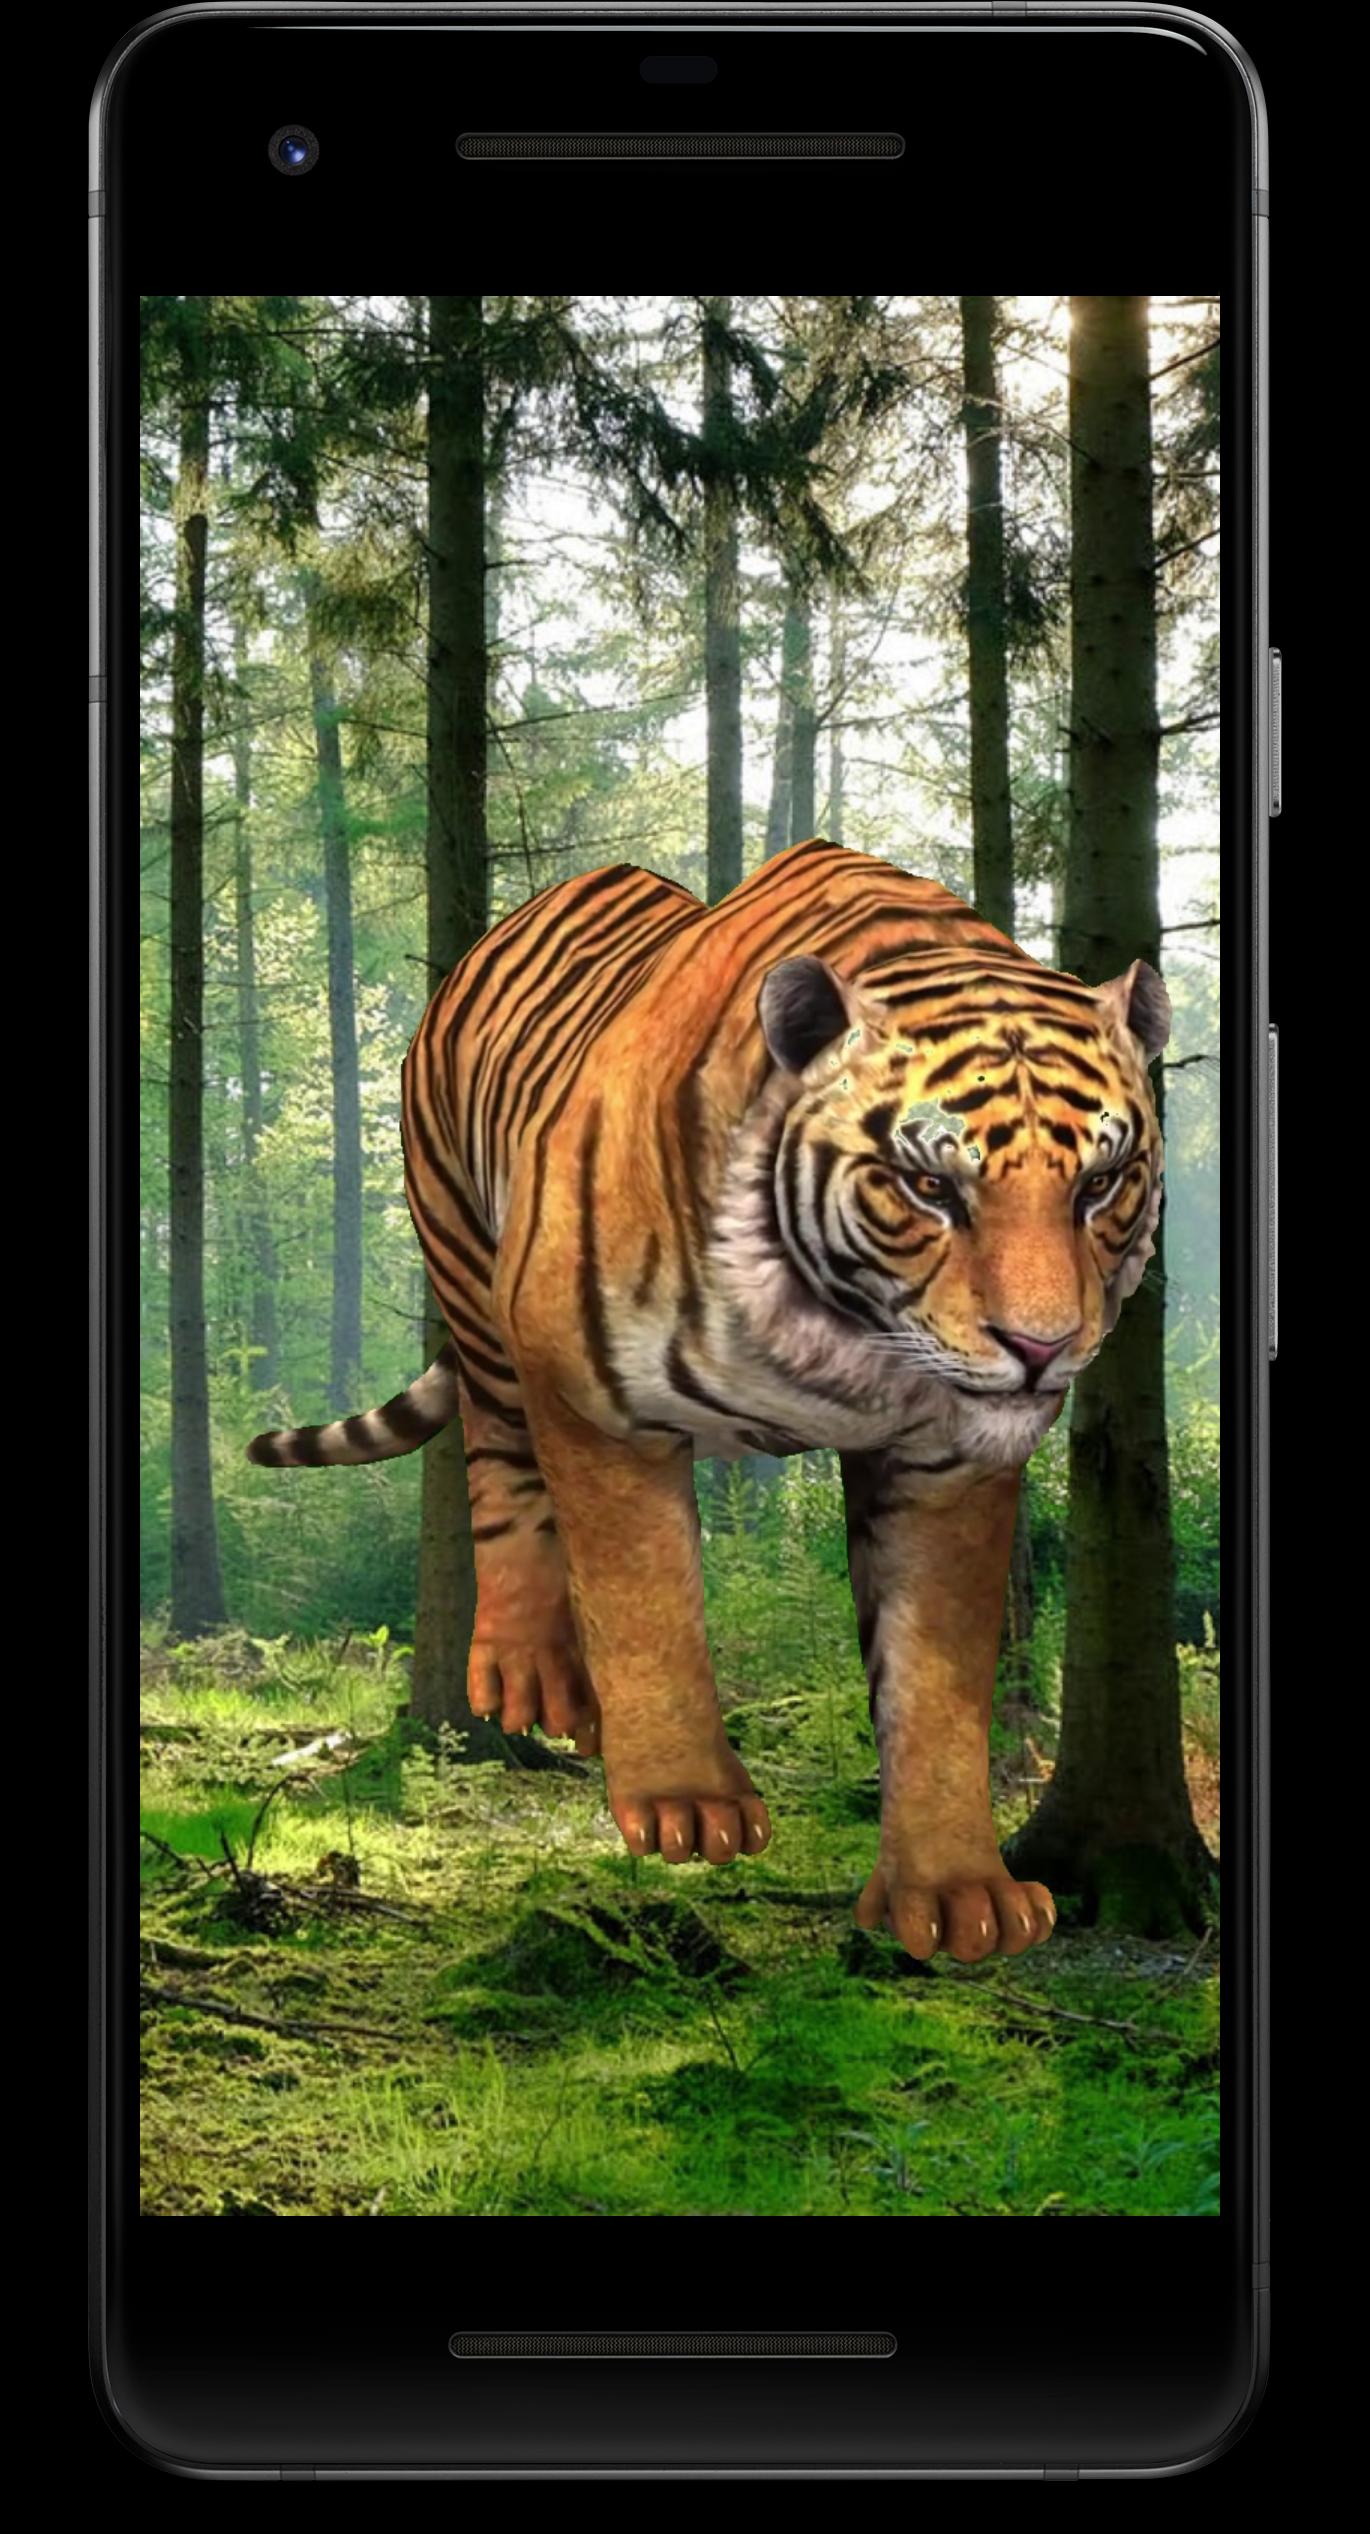 Tiger 3D Live Wallpaper (Hình nền sống 3D về Tiger) Tài liệu và hình ảnh về loài hoang dã luôn đem đến cho chúng ta một cái nhìn quyến rũ. Hãy xem hình ảnh về hình nền sống 3D về Tiger, bạn sẽ nhận được sự sống động cực độ của chú hổ hoang dã, những đường nét và gam màu sẽ khiến tấm hình của bạn thật độc đáo.